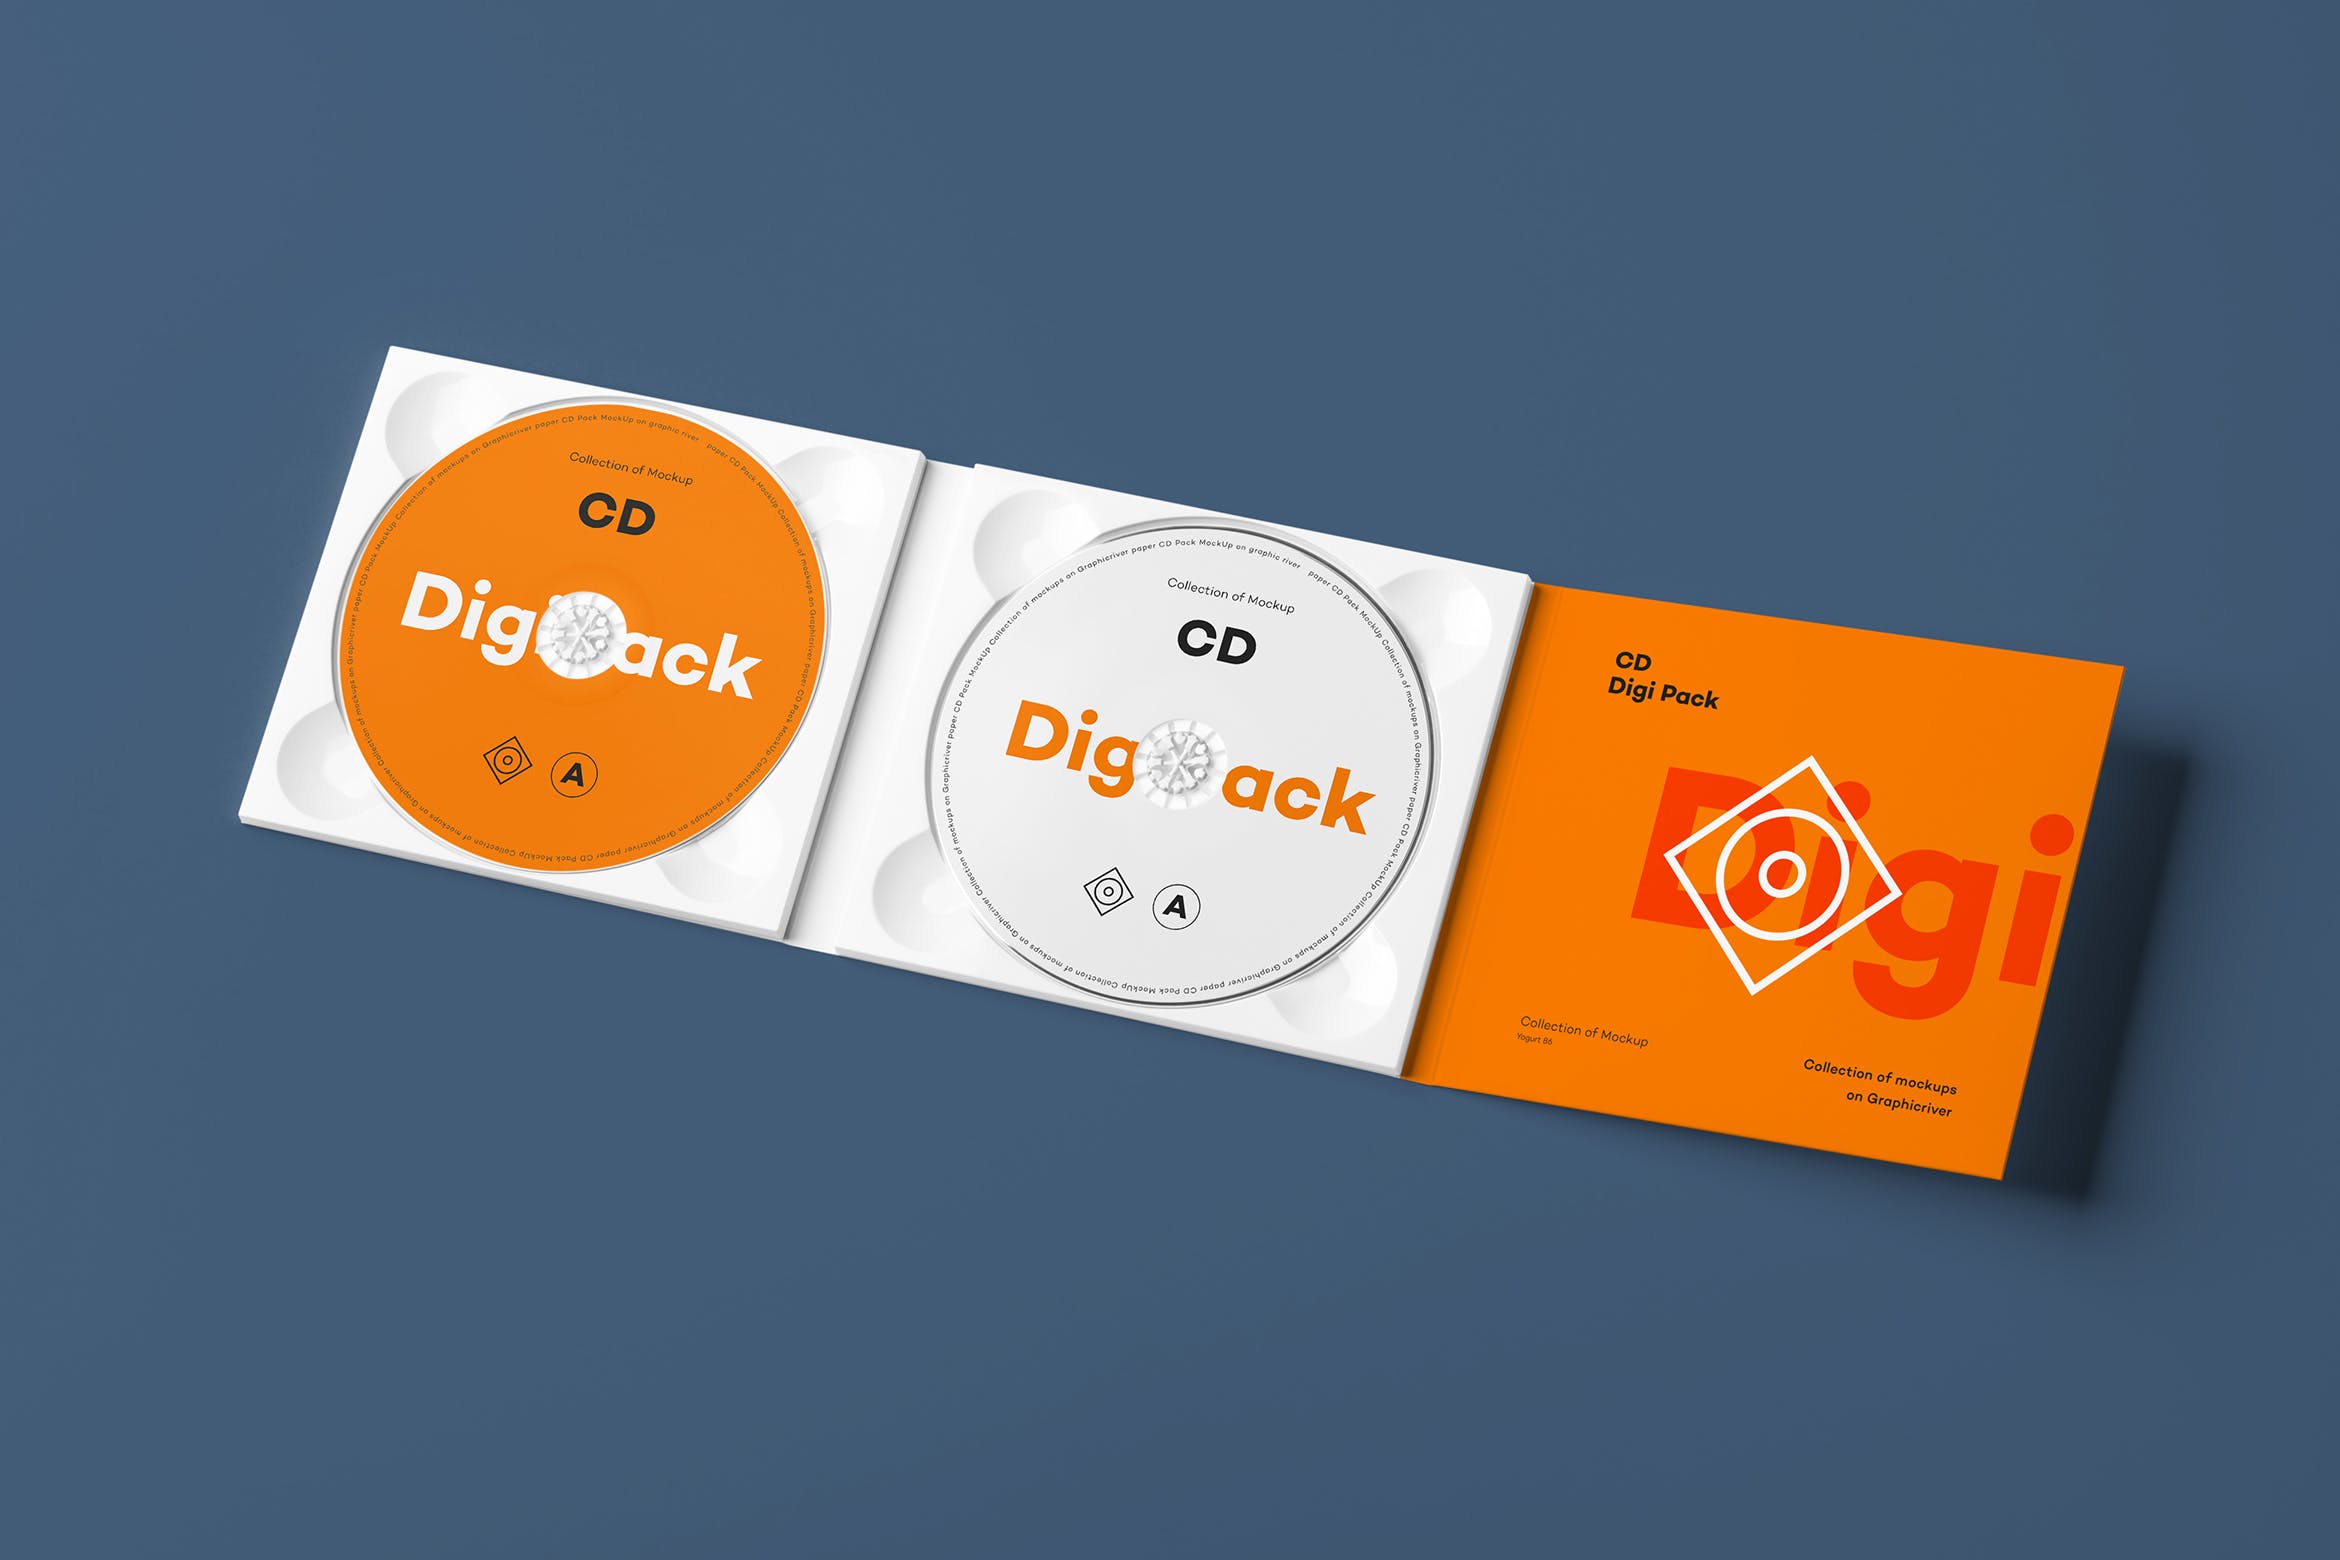 CD光碟封面&包装盒设计图第一素材精选模板v8 CD Digi Pack Mock-up 8插图